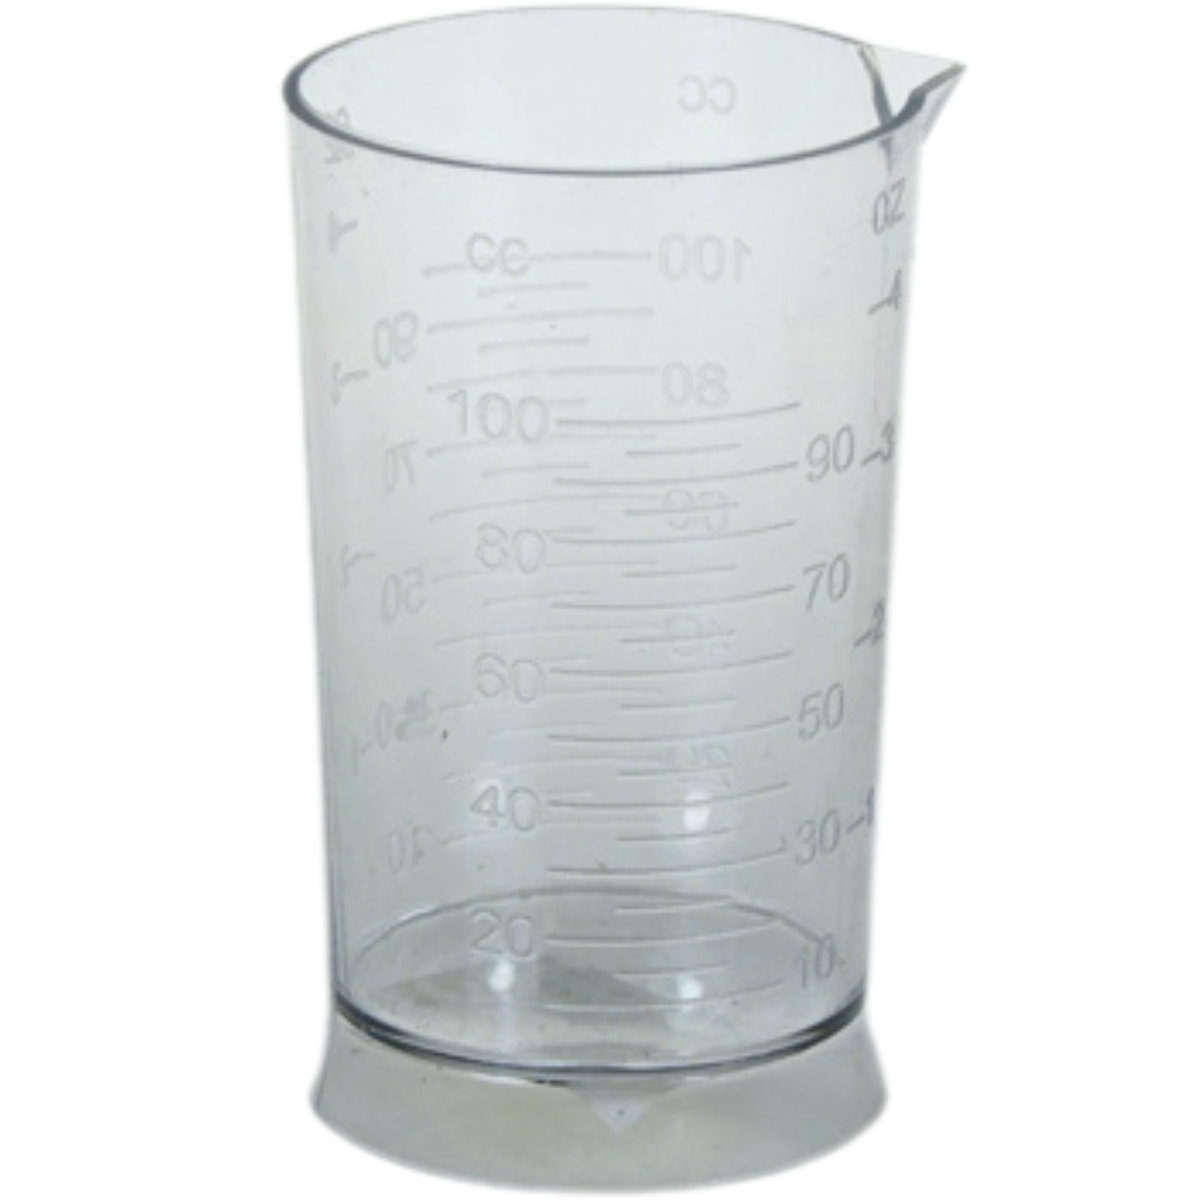 כוס מידה למדידת כמות קרם חמצן